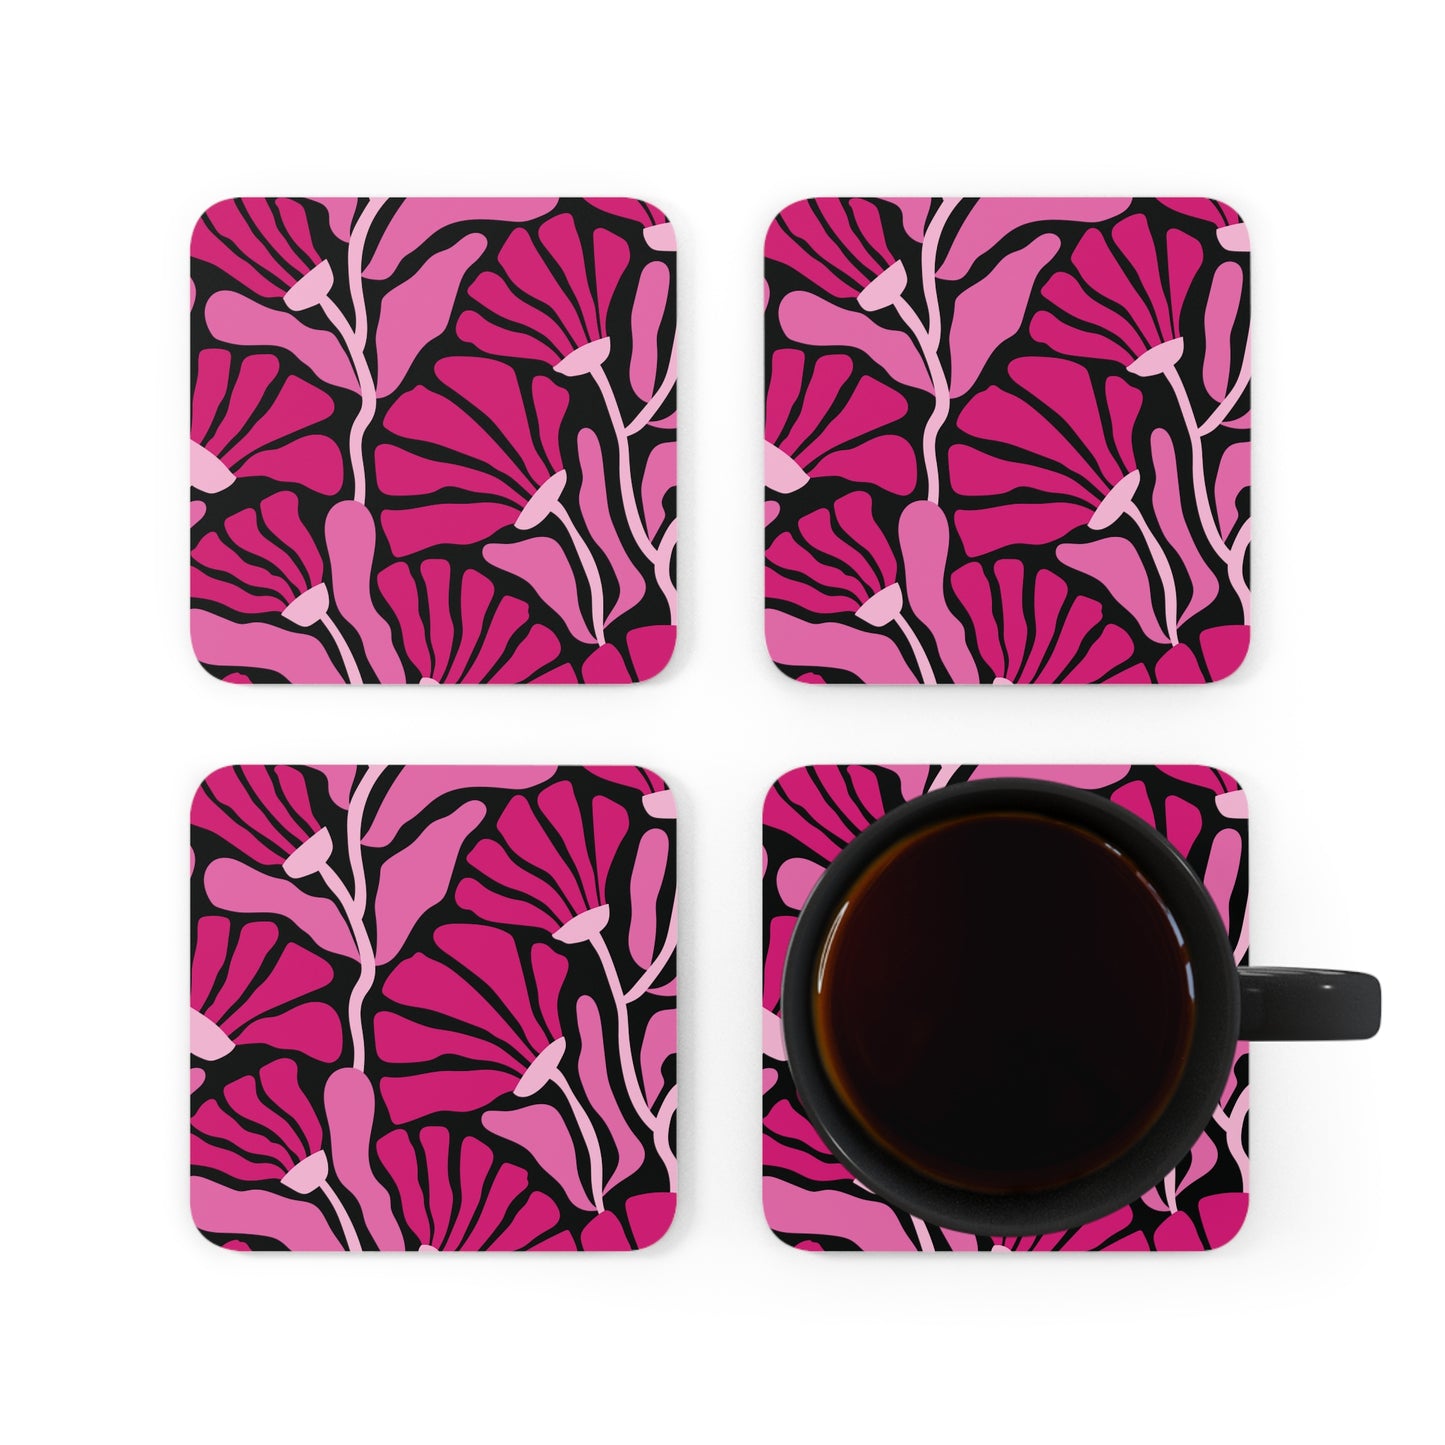 Groovy Mod Minimalist Flowers MCM Pink & Black Coaster Set